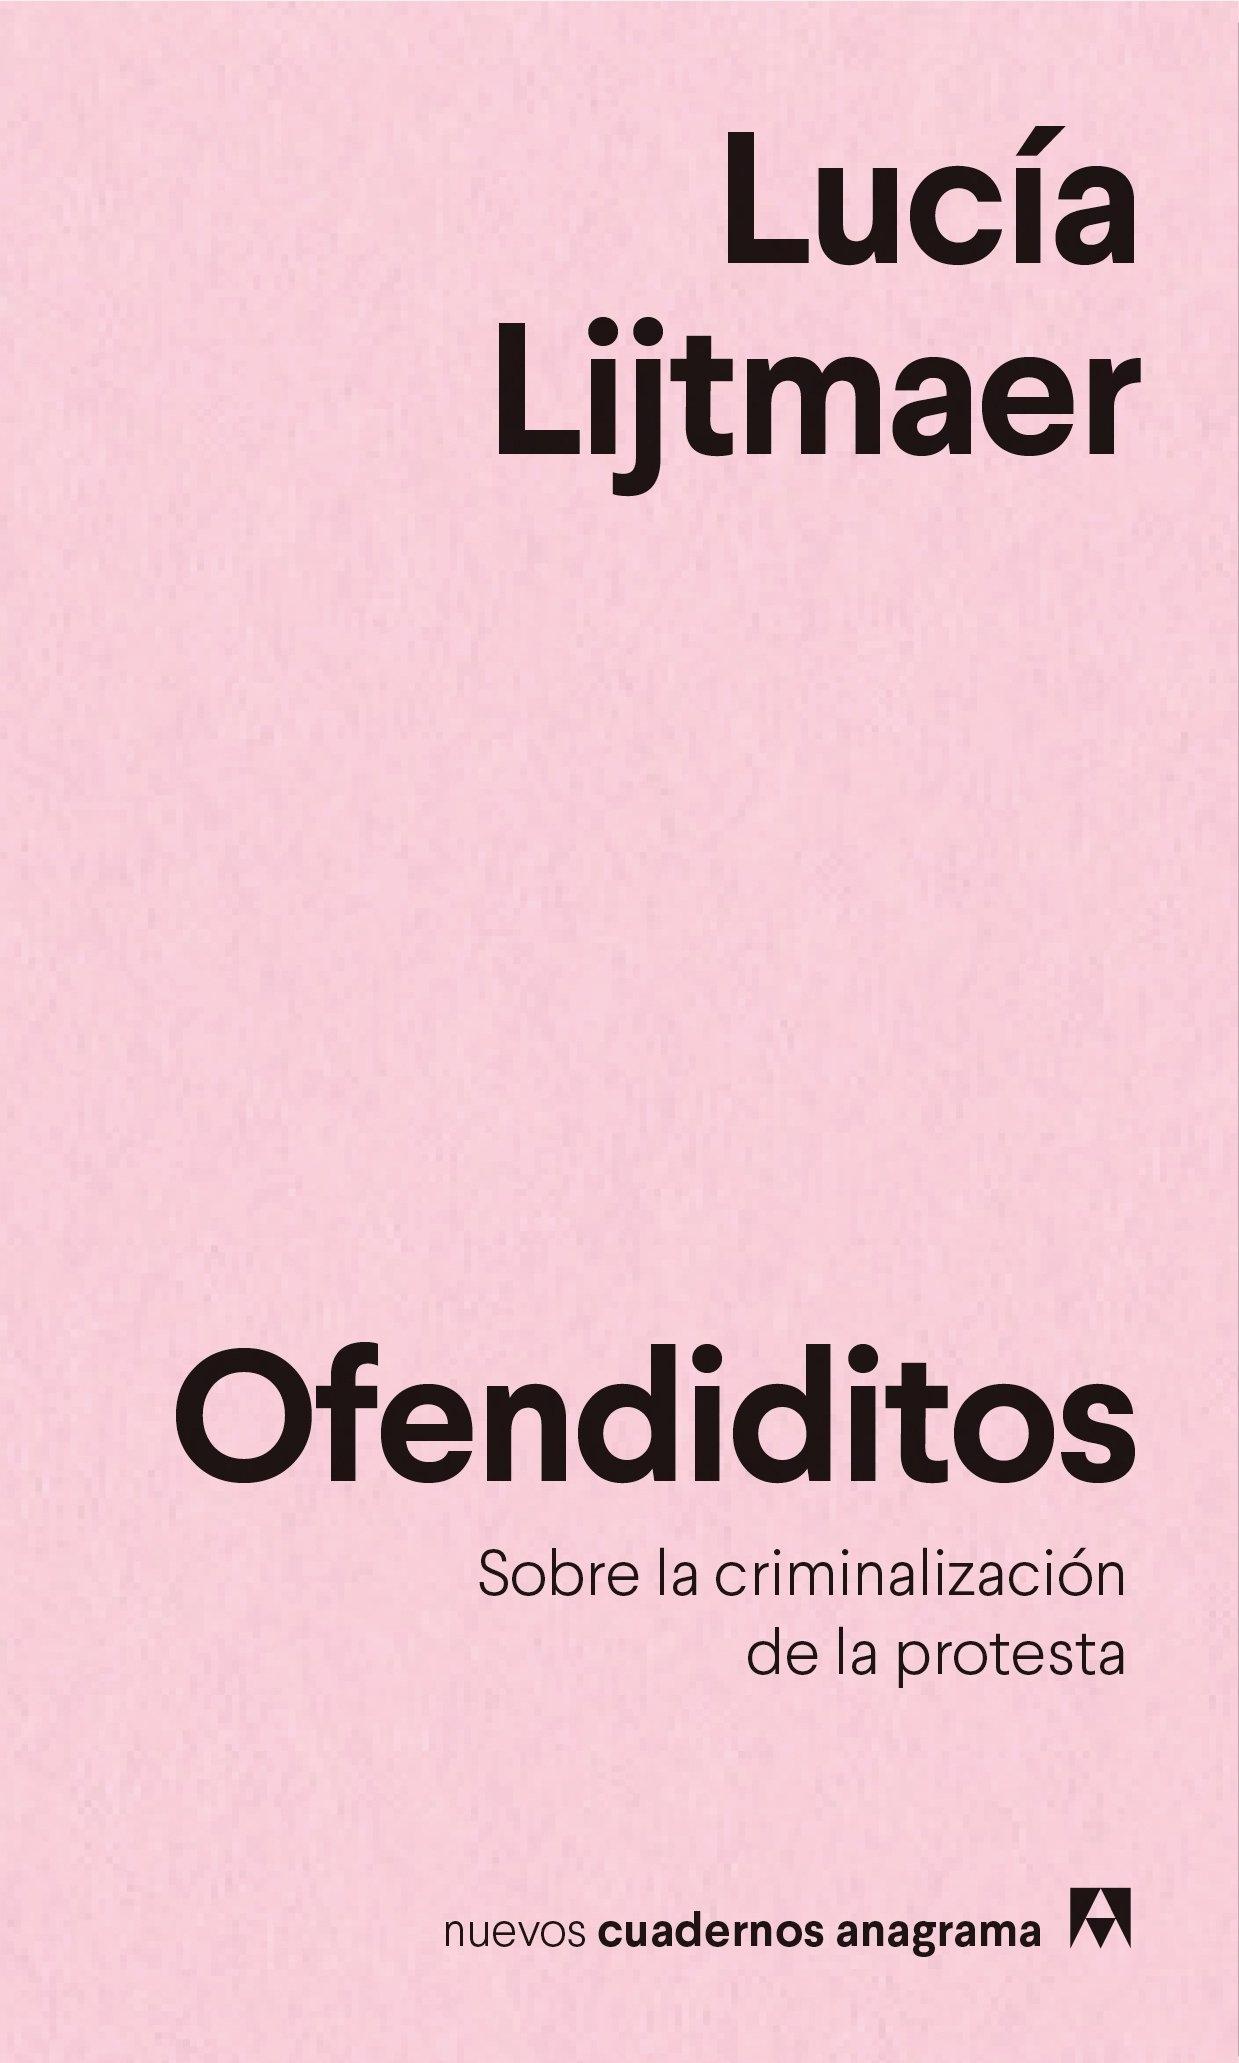 Ofendiditos "Sobre la Criminalización de la Protesta". 